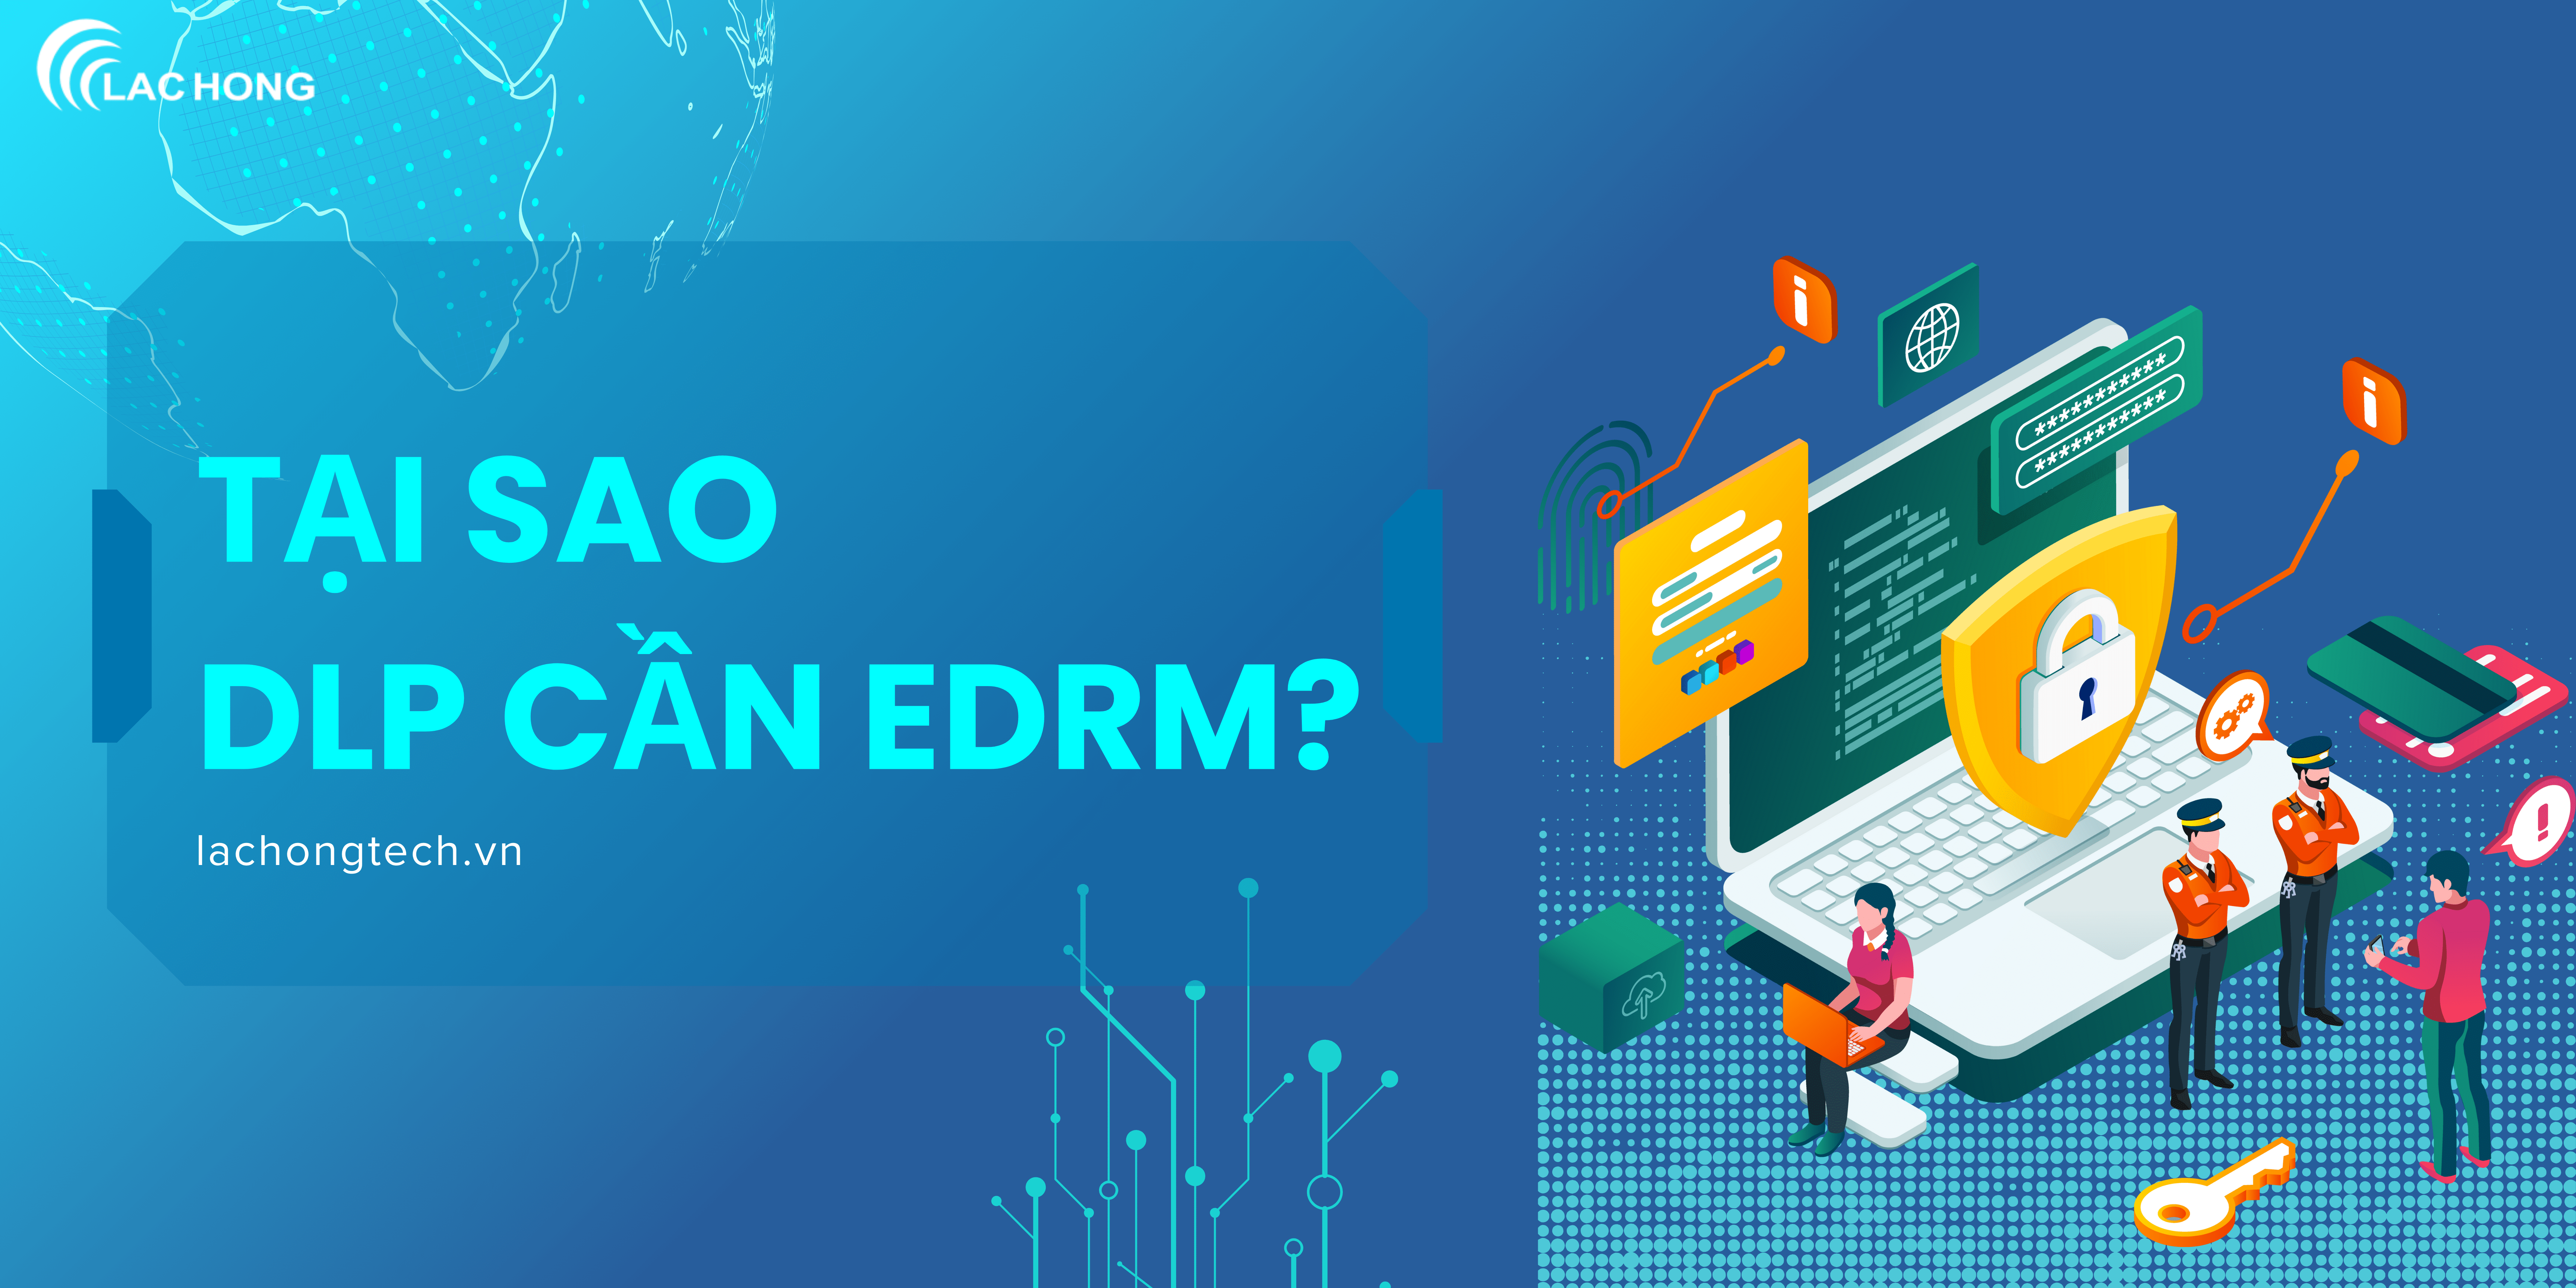 Tại sao DLP cần EDRM?